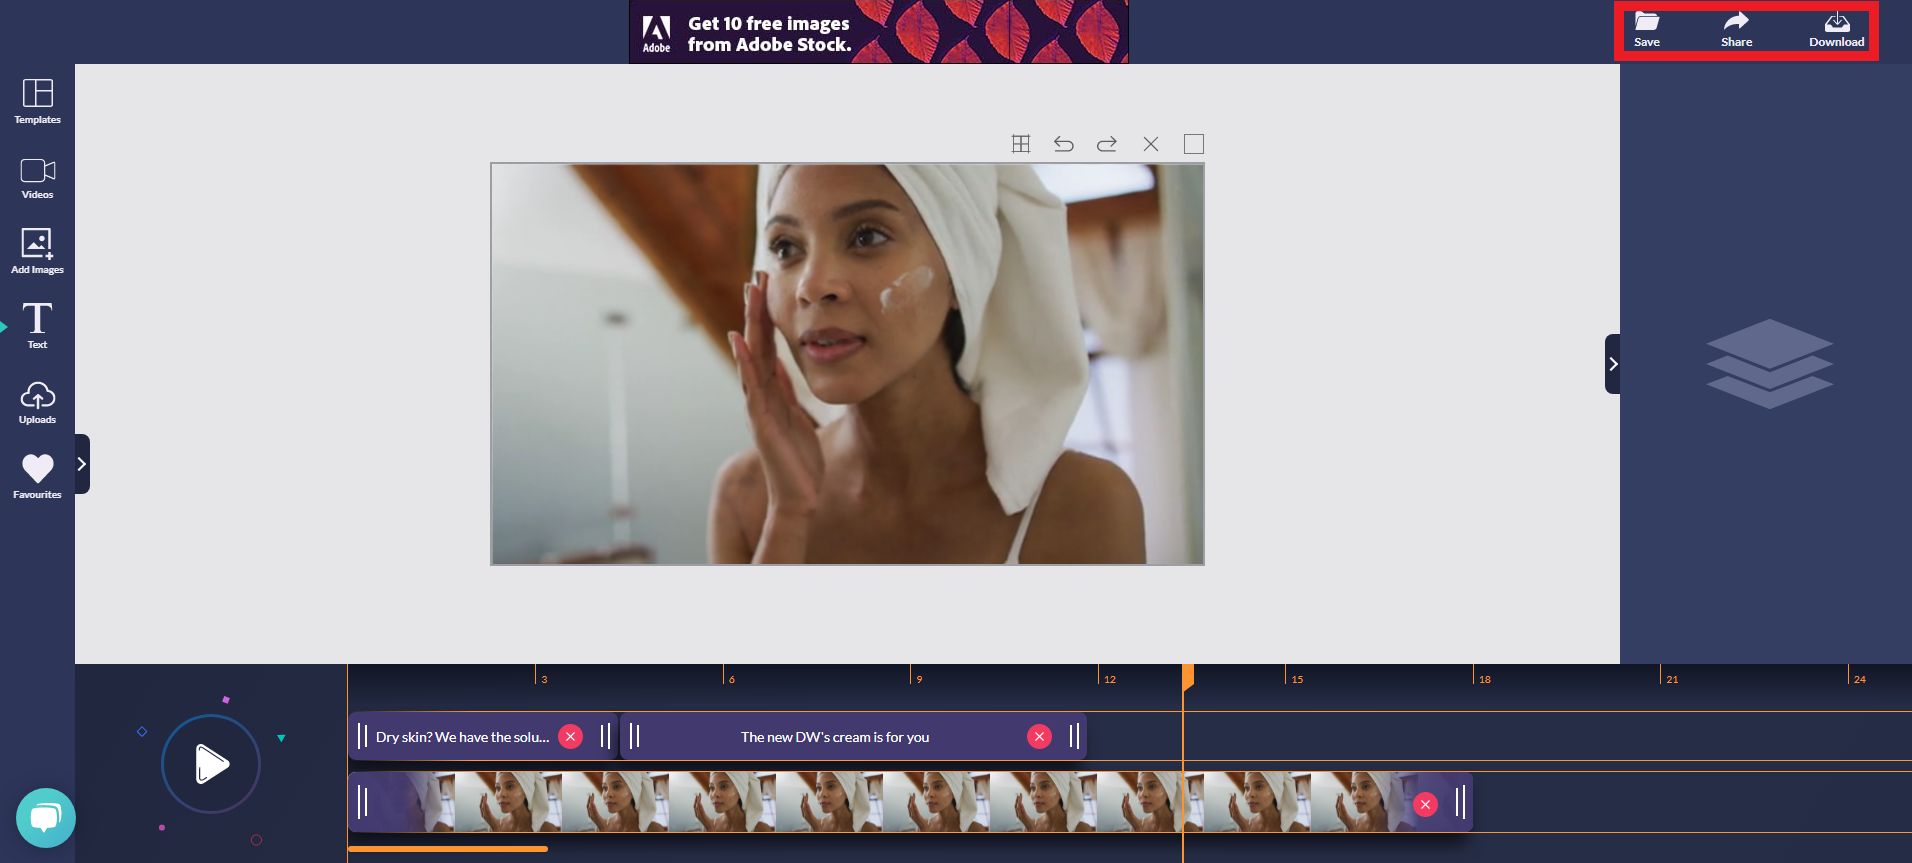 Design Wizard-Videoschnittbildschirm mit hervorgehobenen Tasten für Speichern, Teilen und Herunterladen - Wie man ein Video-Ad direkt in Ihren LinkedIn-Feed aus dem Design Wizard herunterlädt oder teilt - Bild